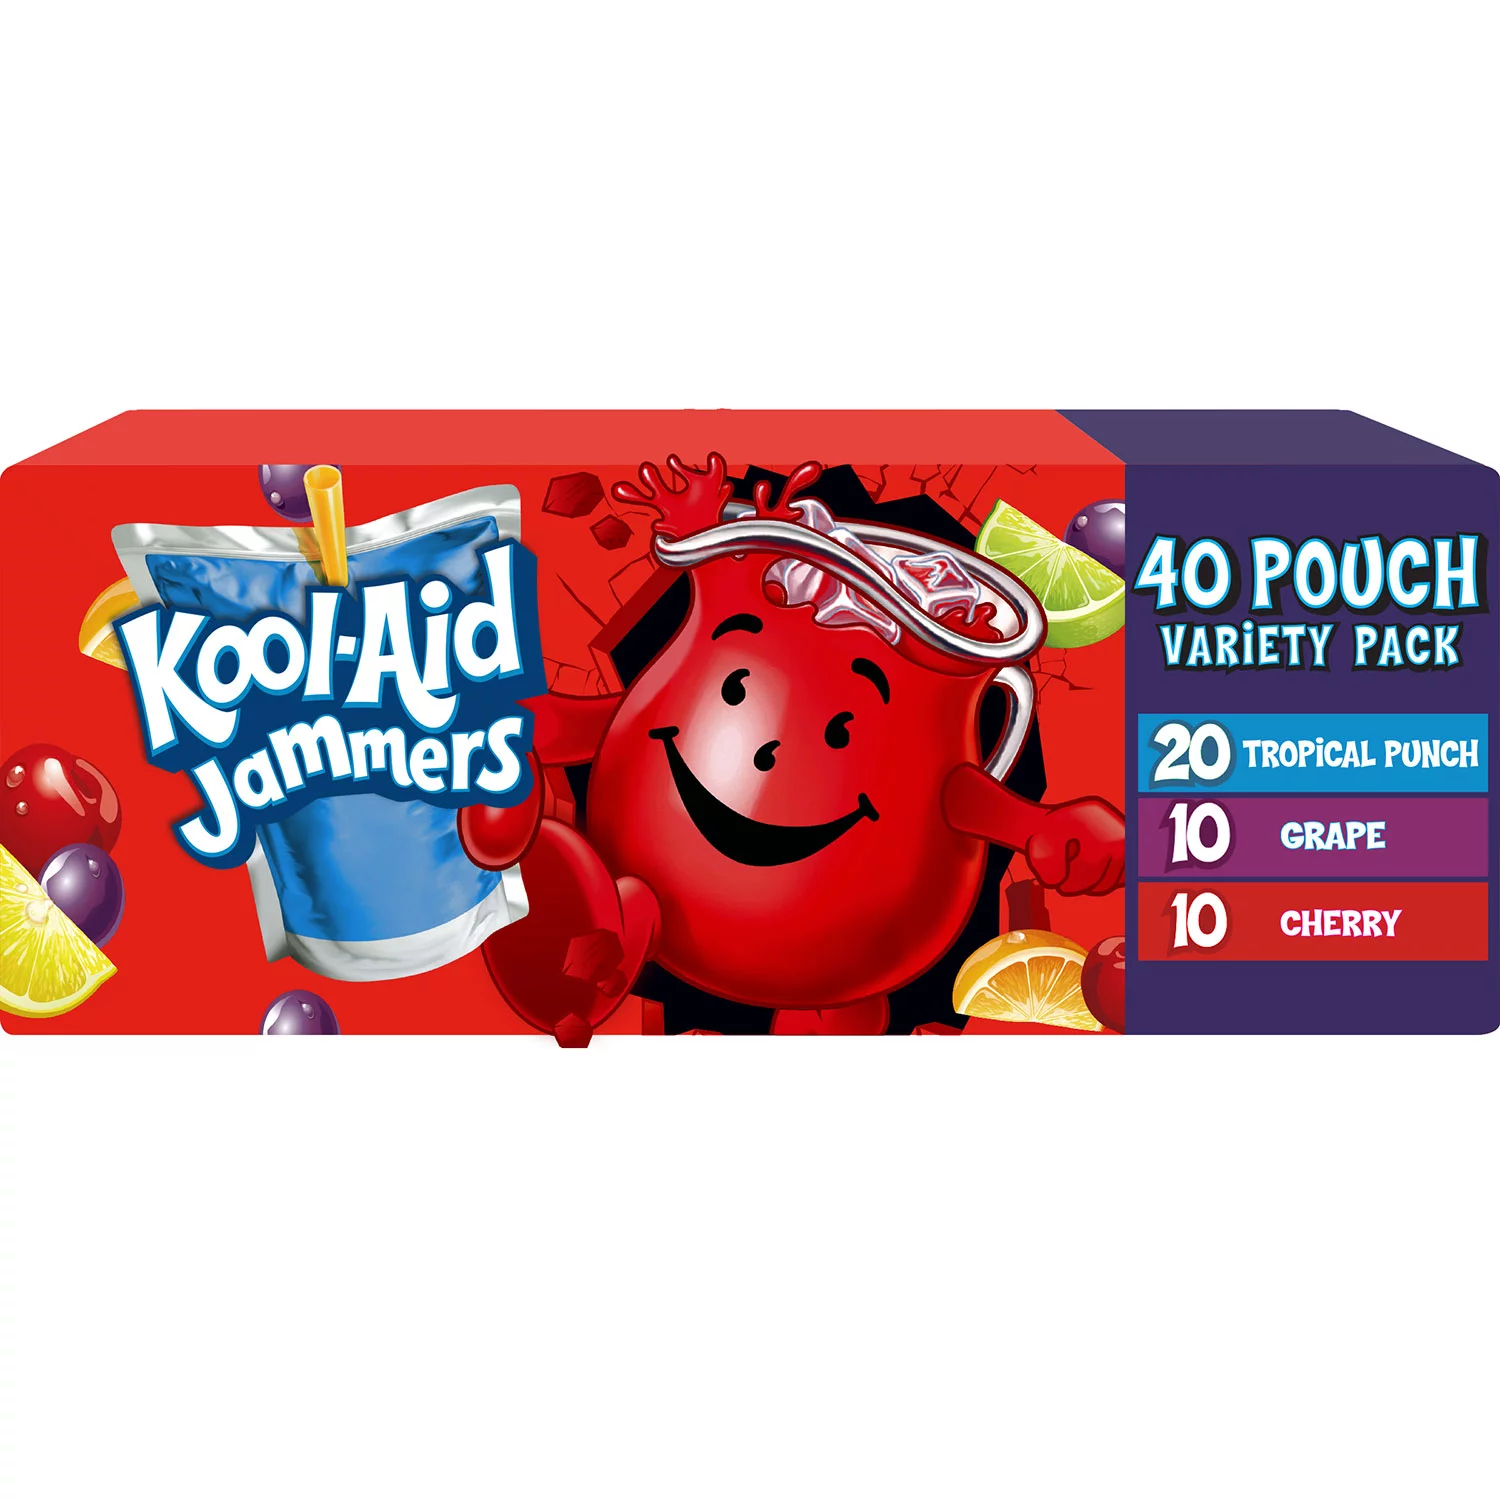 Kool-Aid Jammers Variety Pack